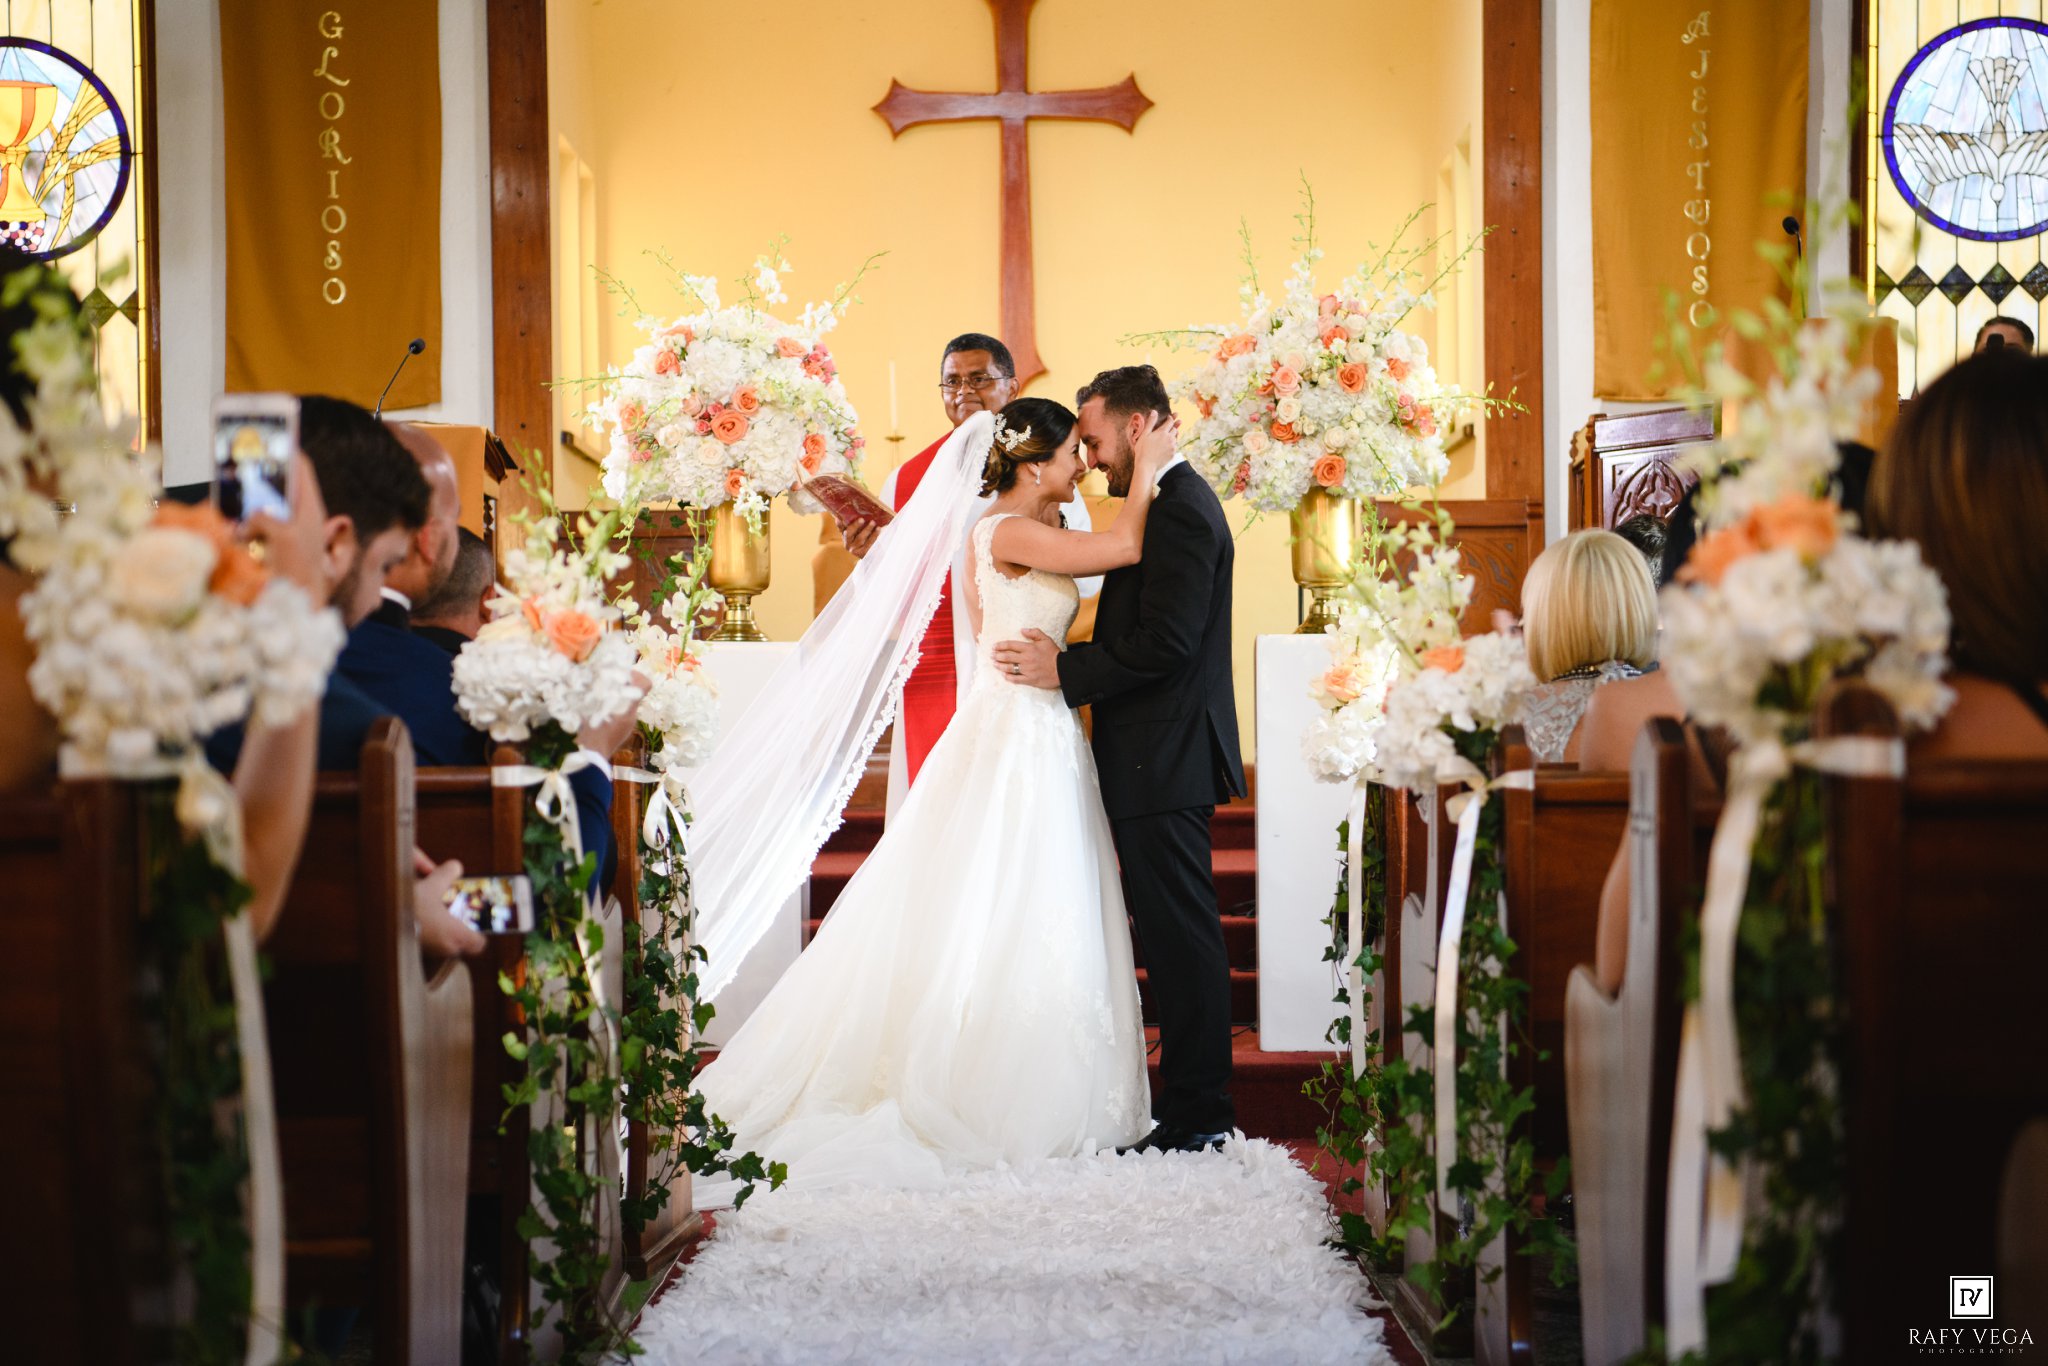 Matrimonio Blindado: Su matrimonio a prueba de divorcio – FaithGateway Store